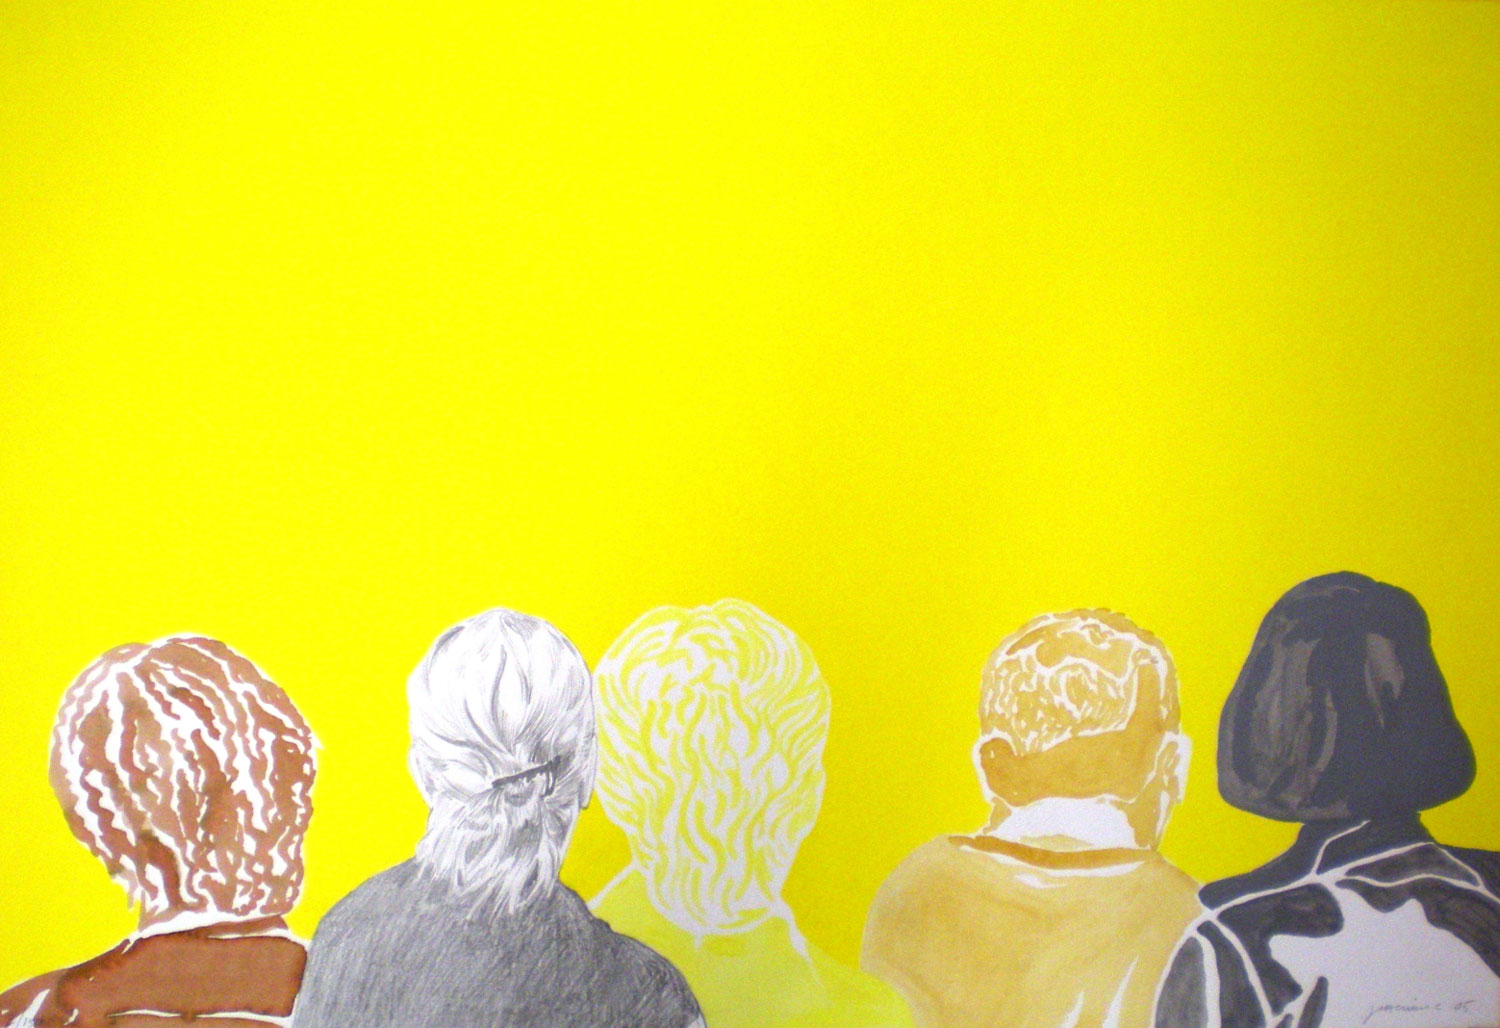 Målning. I nedre delen av bilden ser vi fem personer bakifrån, från axlarna och upp. Bakgrunden är starkt gul. De är målade/tecknade i olika färger. Den första personen har brunt lockigt hår och brun klädsel, nästa har ljust uppsatt hår, grå kläder, den är tecknad i blyerts, personen bredvid har lockigt hår målat med vit färg och den gula klädseln smälter in med bakgrunden, nästa person har gulbrun klädsel med kort hår och den sista är mörkgrå både i hår och kläder och har halvlångt hår. De kanske står och tittar på ett konstverk.